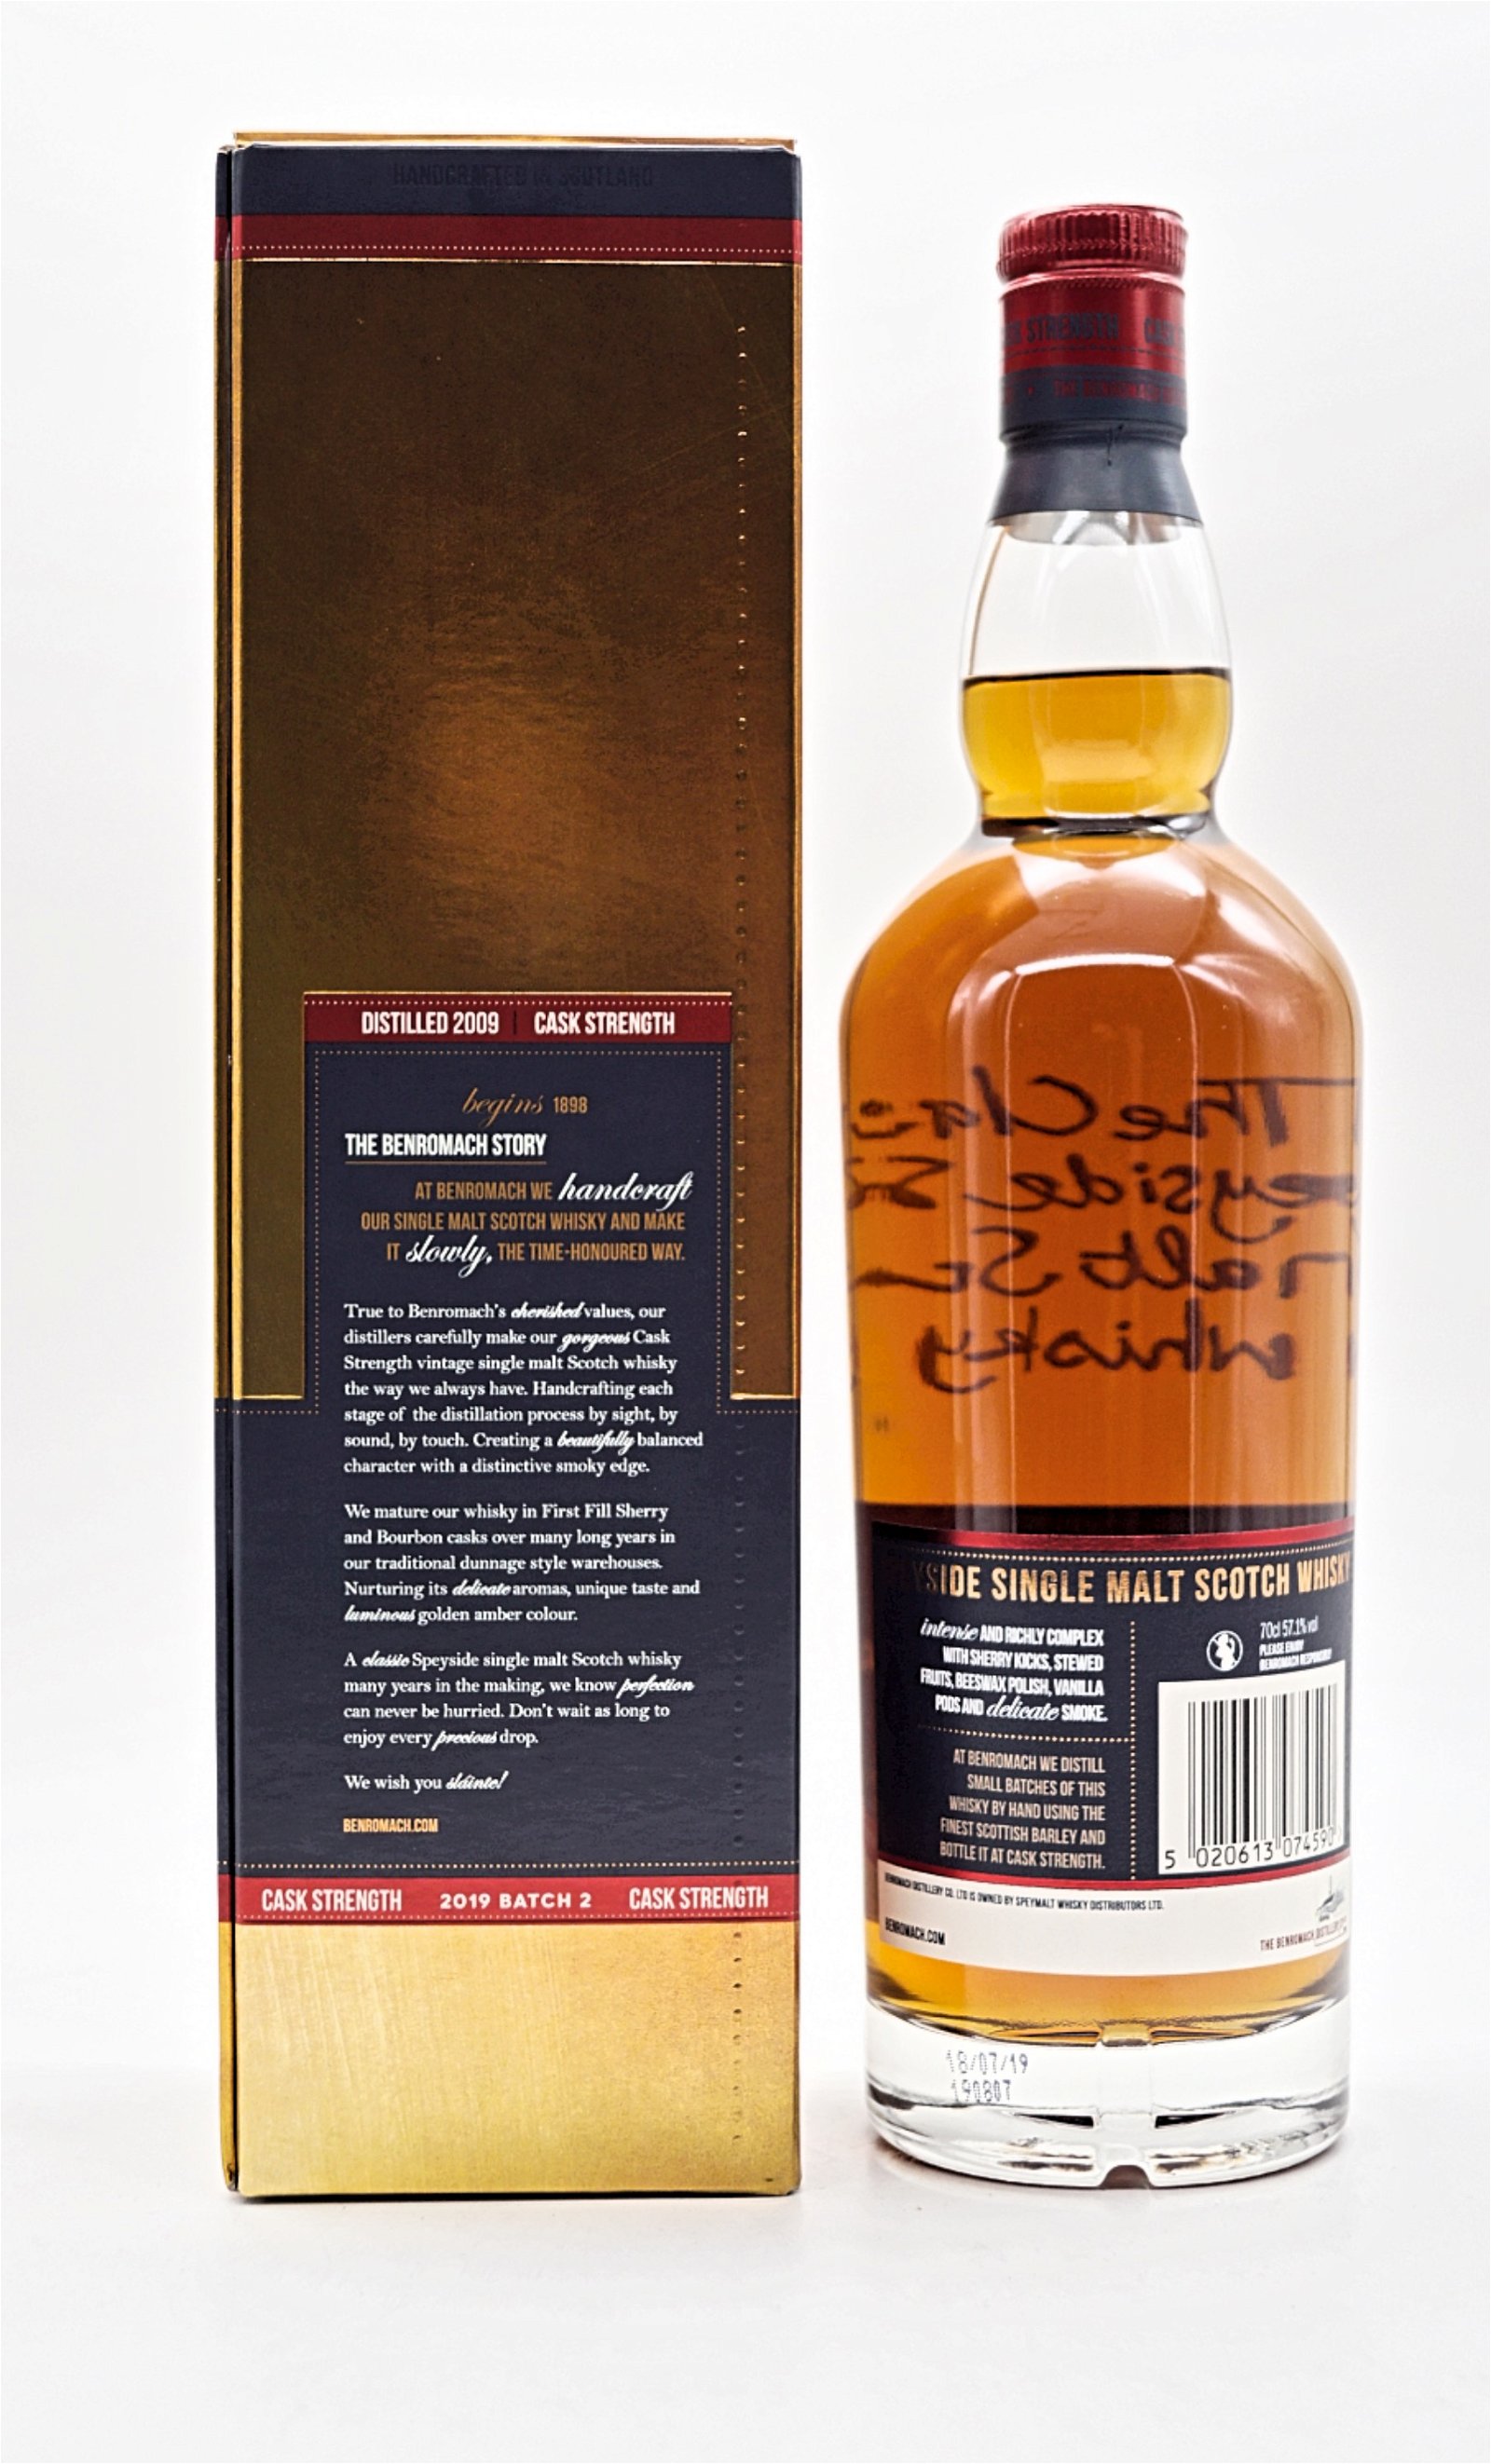 Benromach Cask Strength 2009/2019 Batch 2 Speyside Single Malt Scotch Whisky